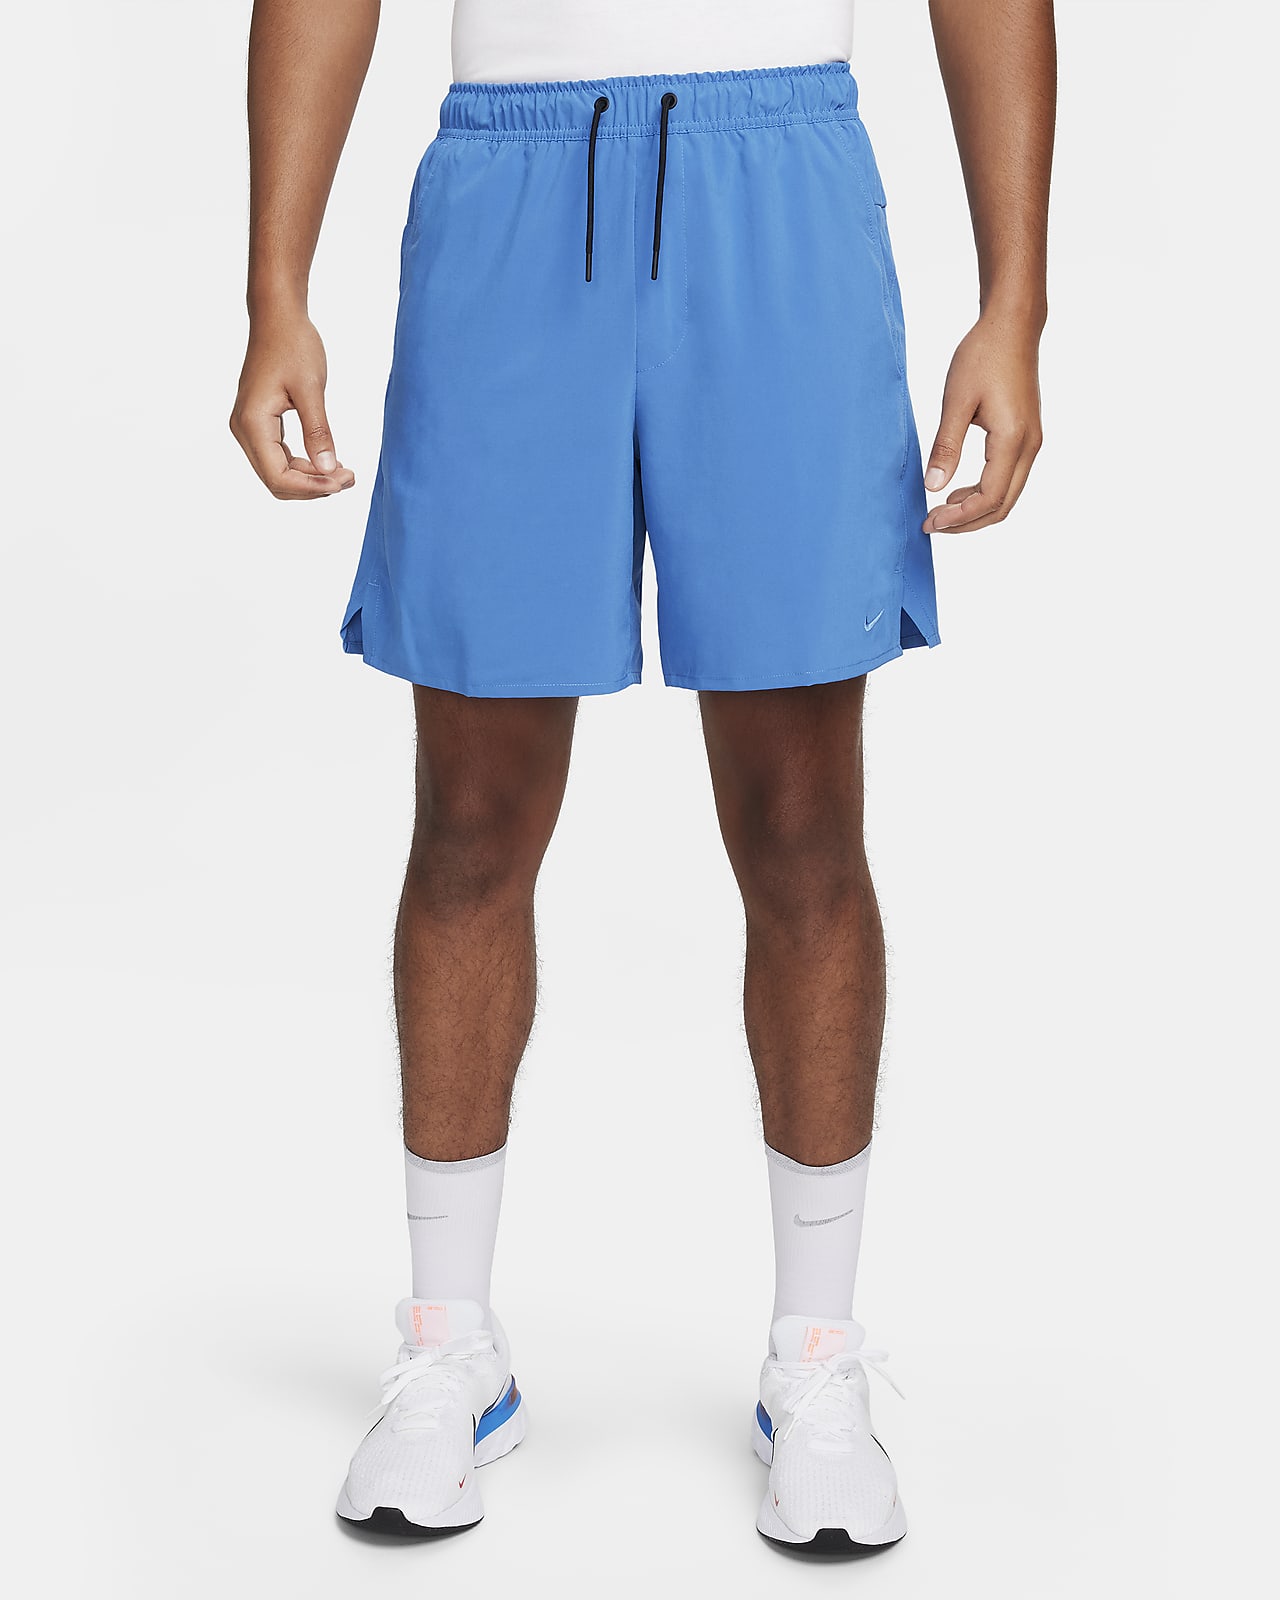 Alsidige Nike Unlimited-Dri-FIT-shorts (18 cm) uden for til mænd